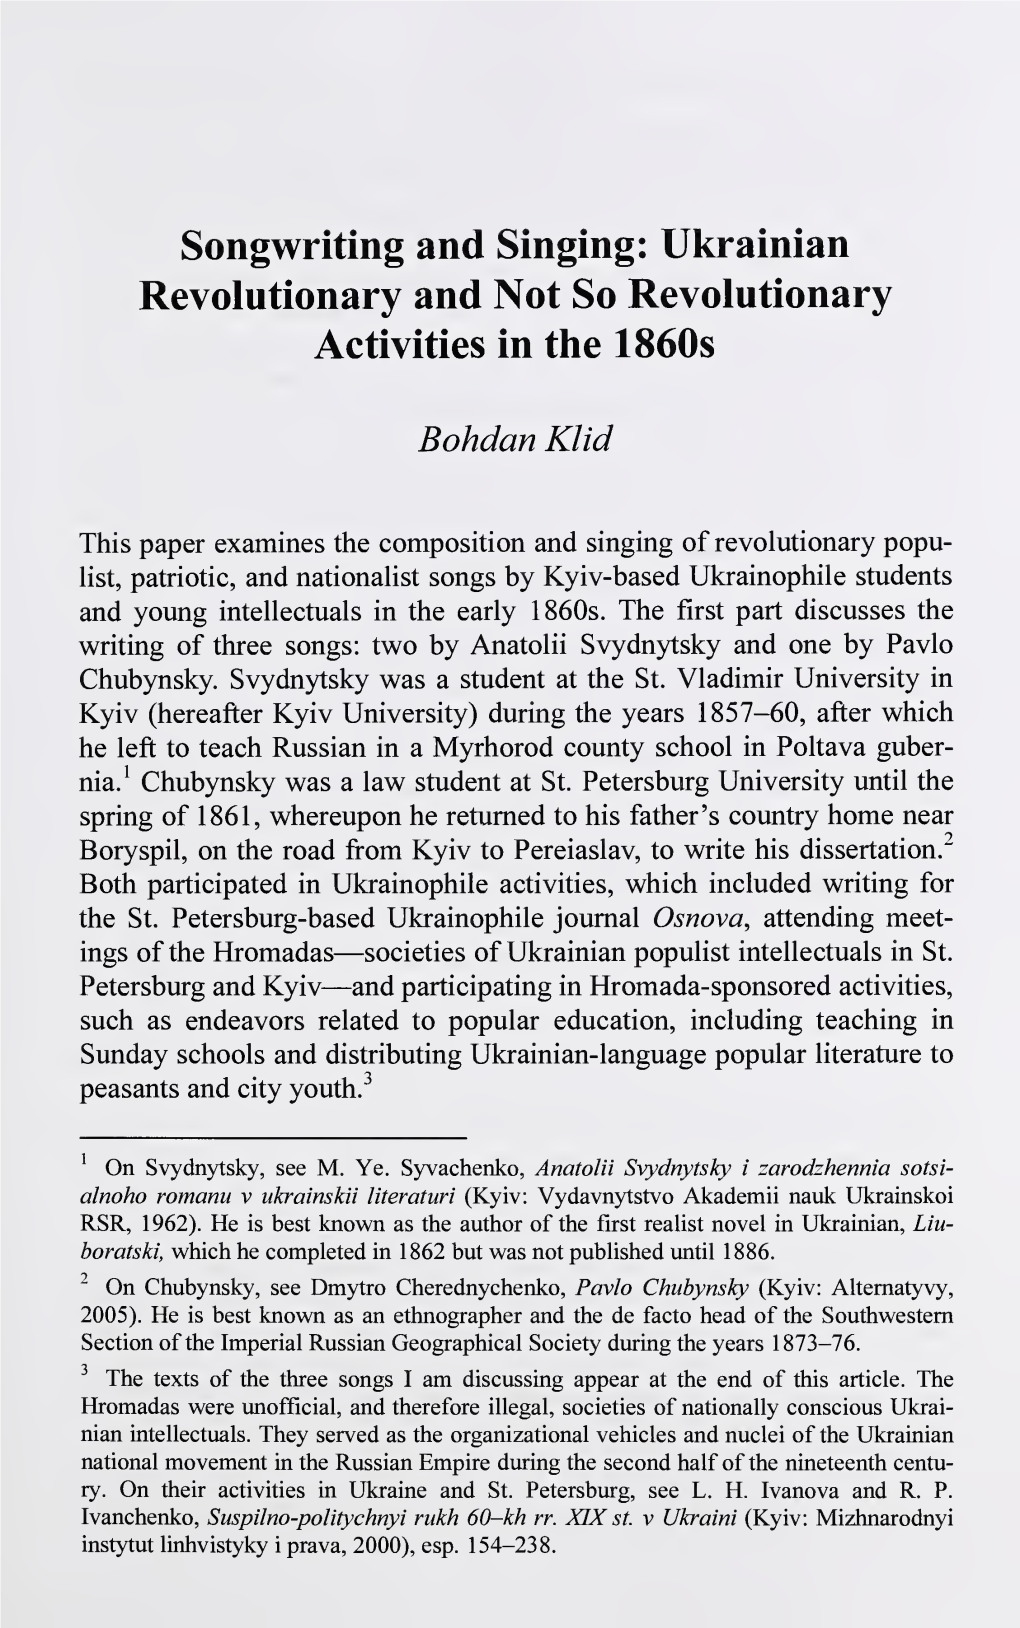 Journal of Ukrainian Studies 20, Nos